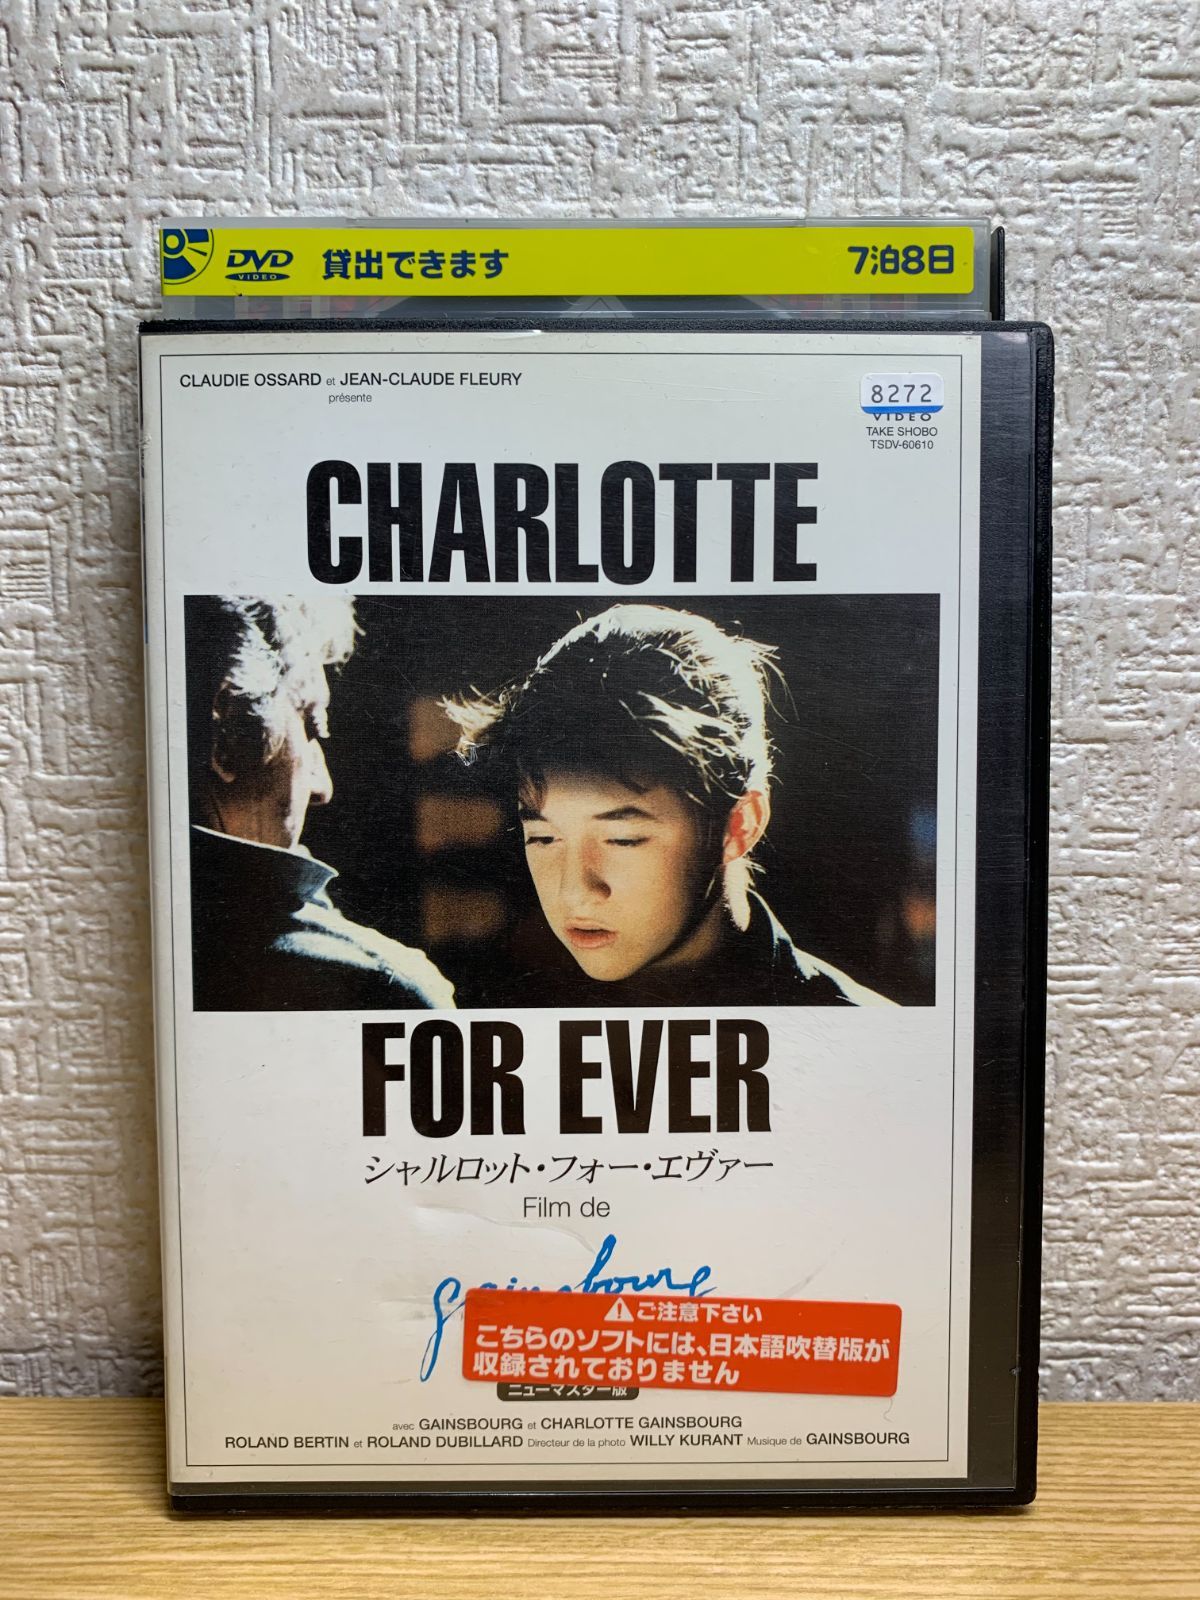 DVD シャルロット・フォーエヴァー(字) - DVD